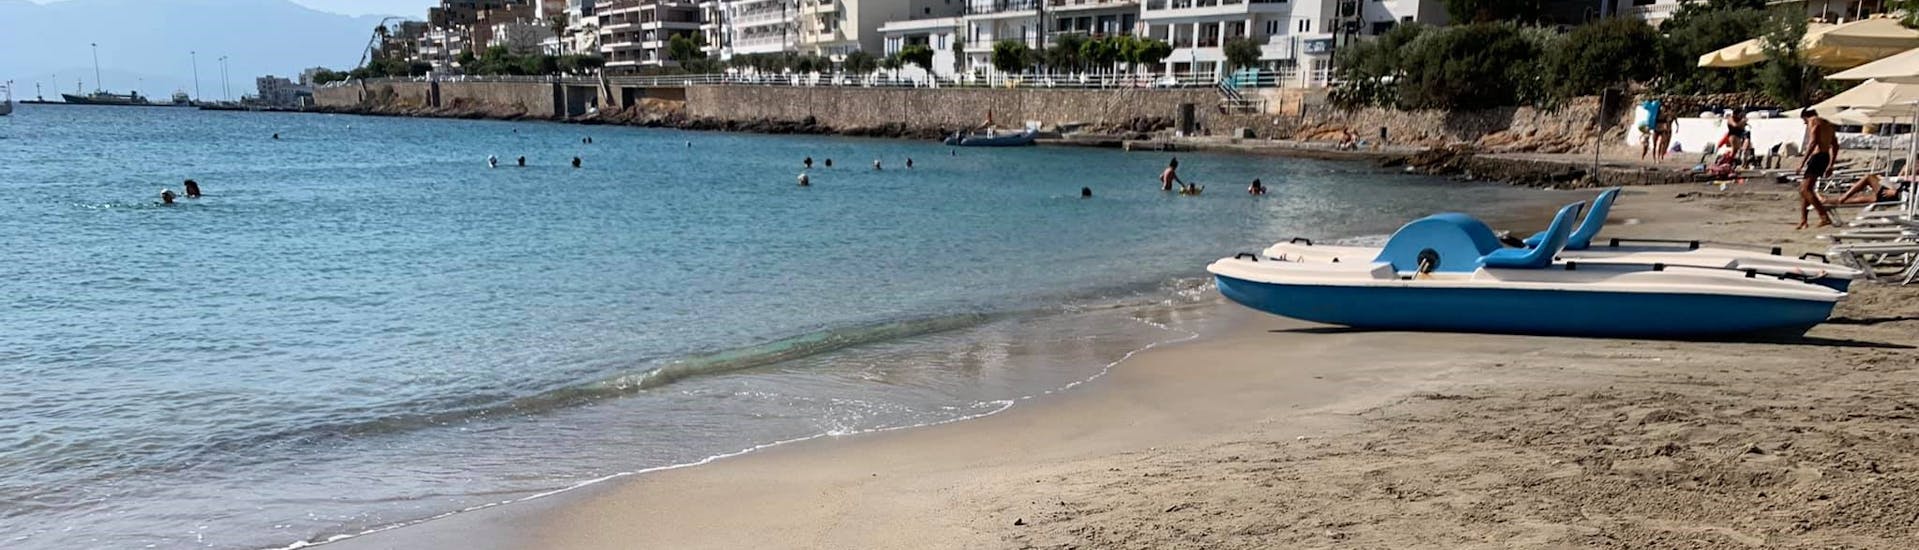 Notre pédalo vous attend sur la plage avec Amoudi Watersports.